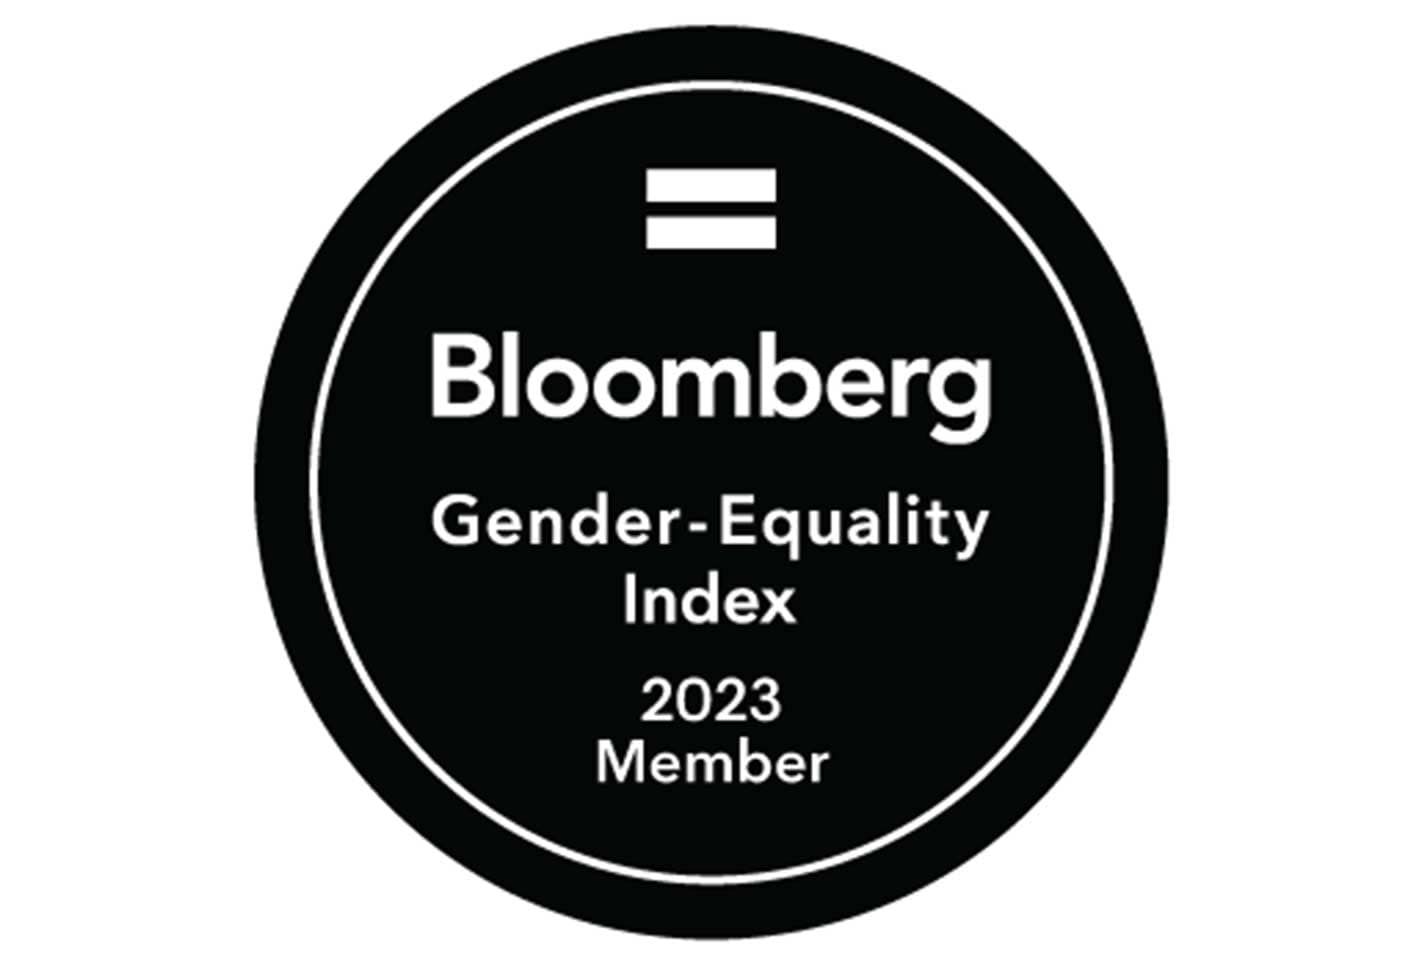 Bloomberg Gender-Equality Index 2023 badge